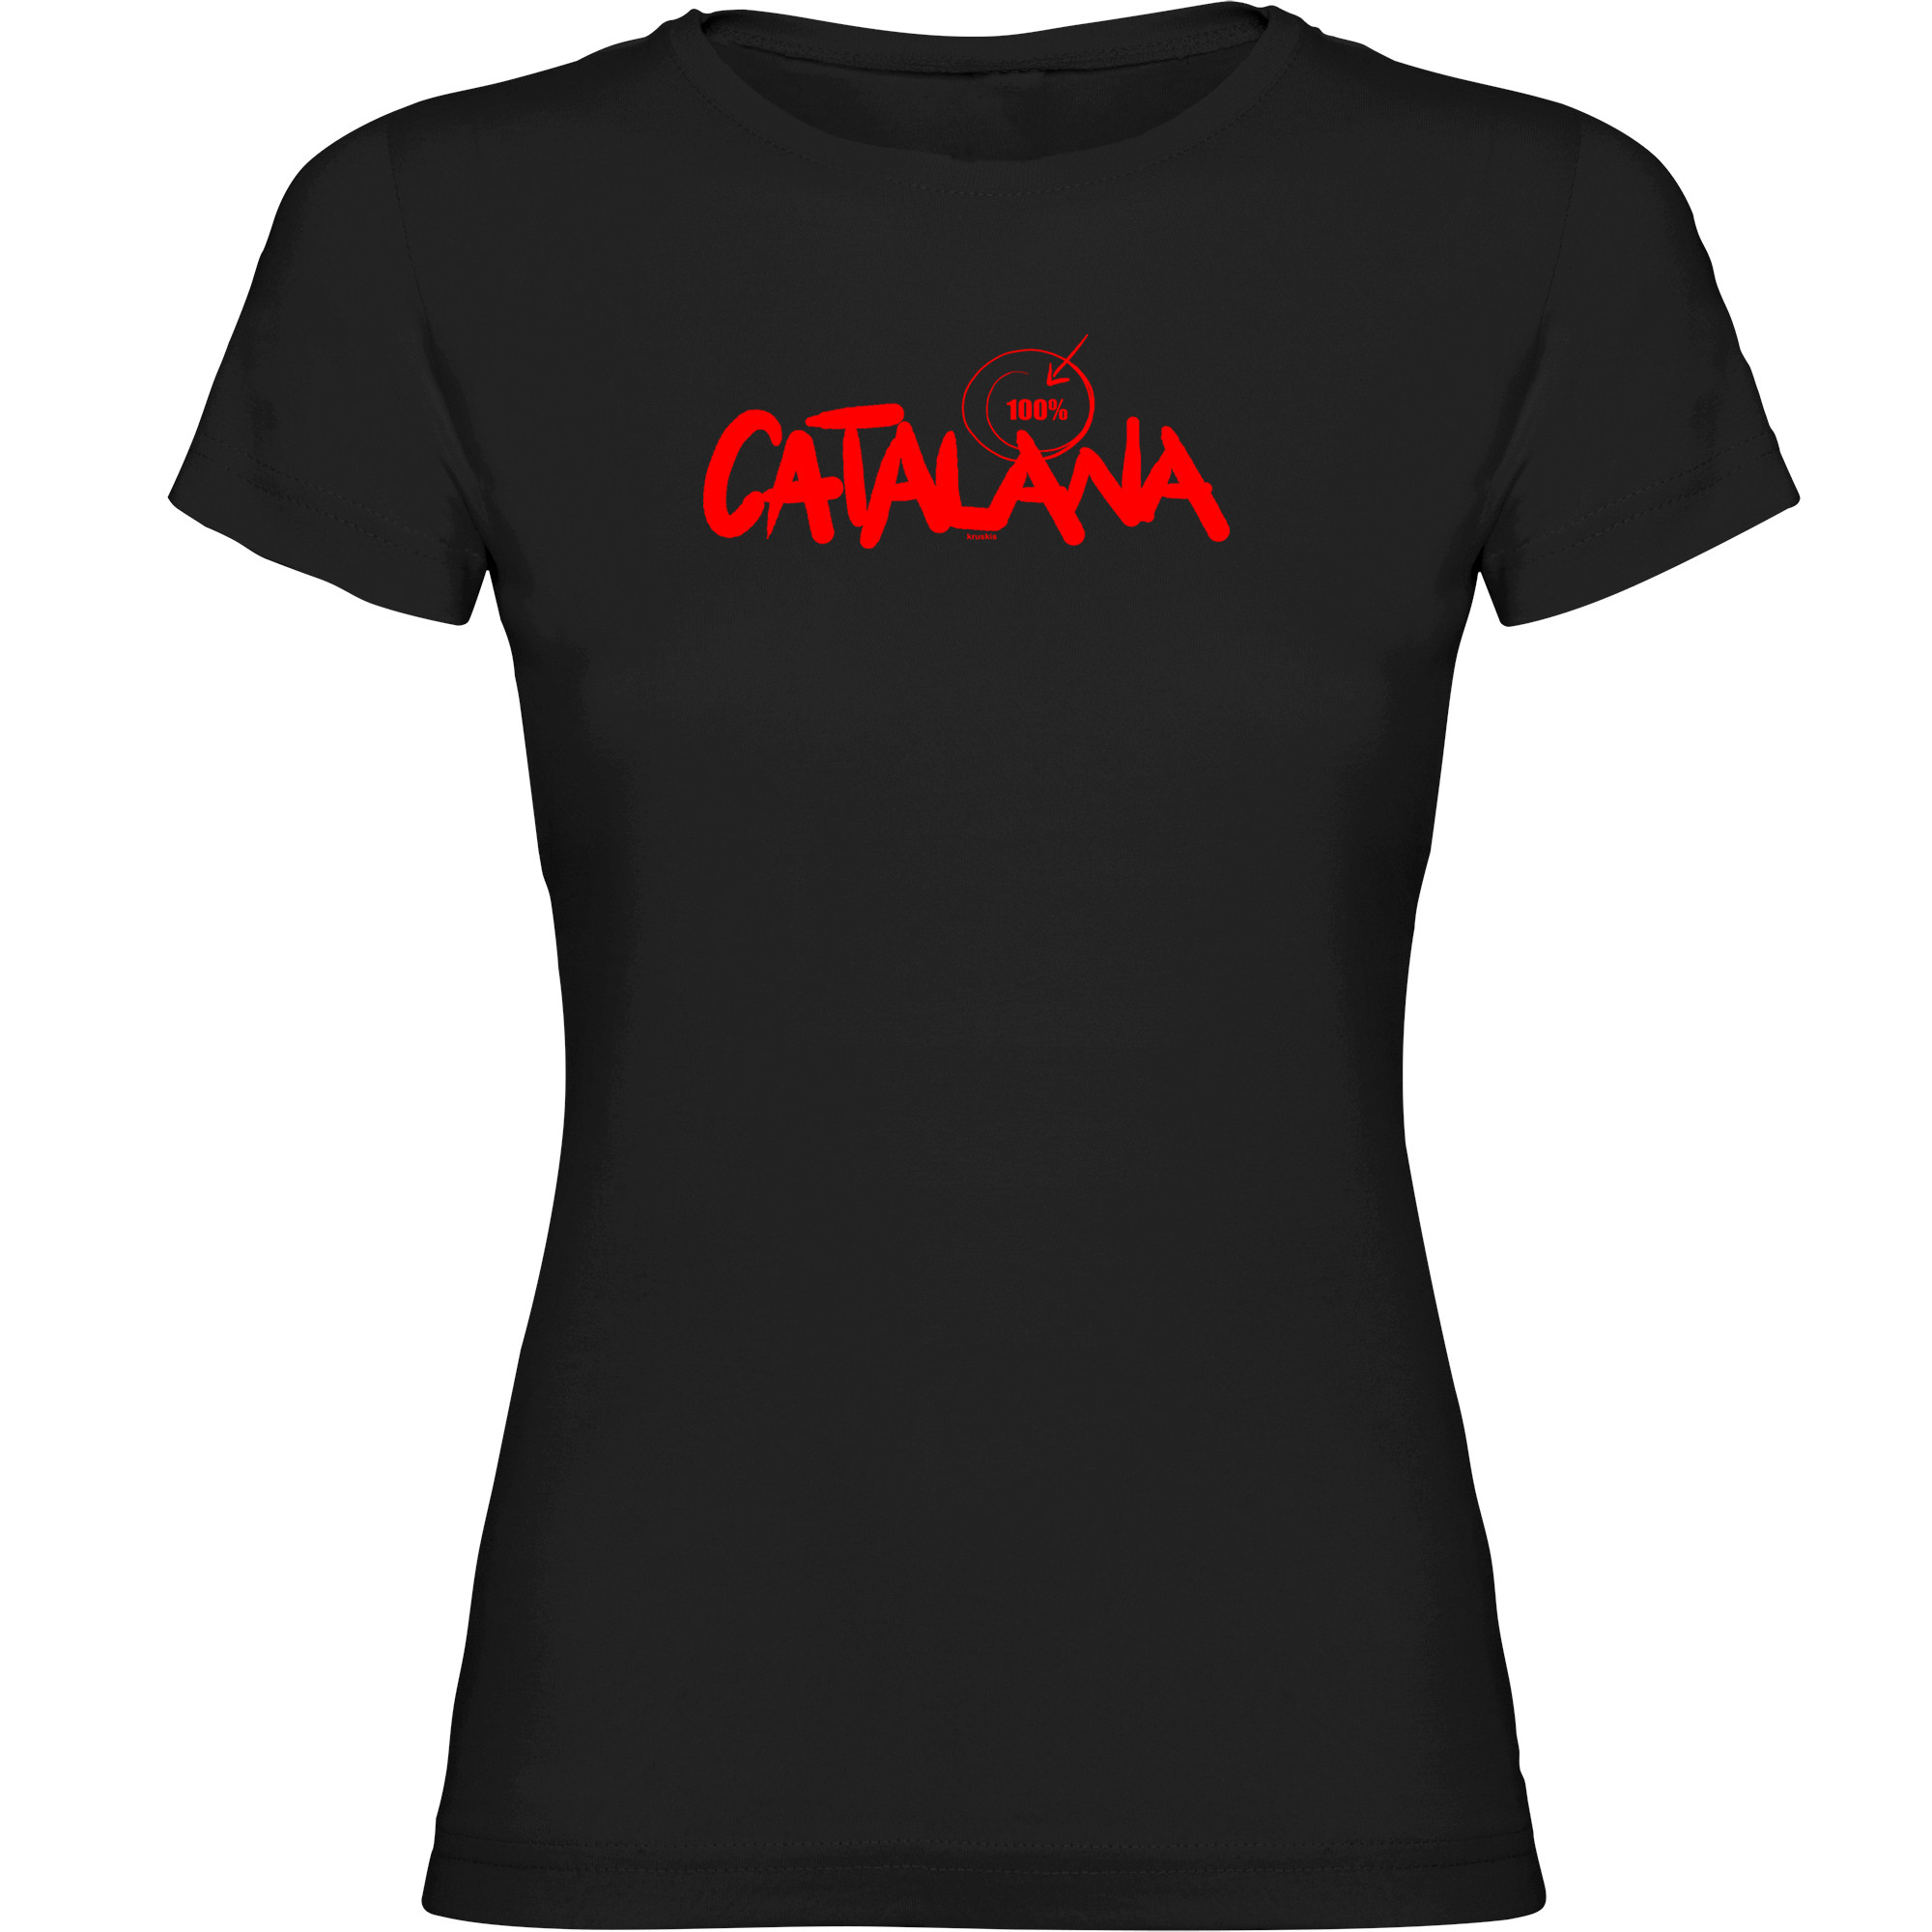 T Shirt Catalonia 100 % Catalana Short Sleeves Woman